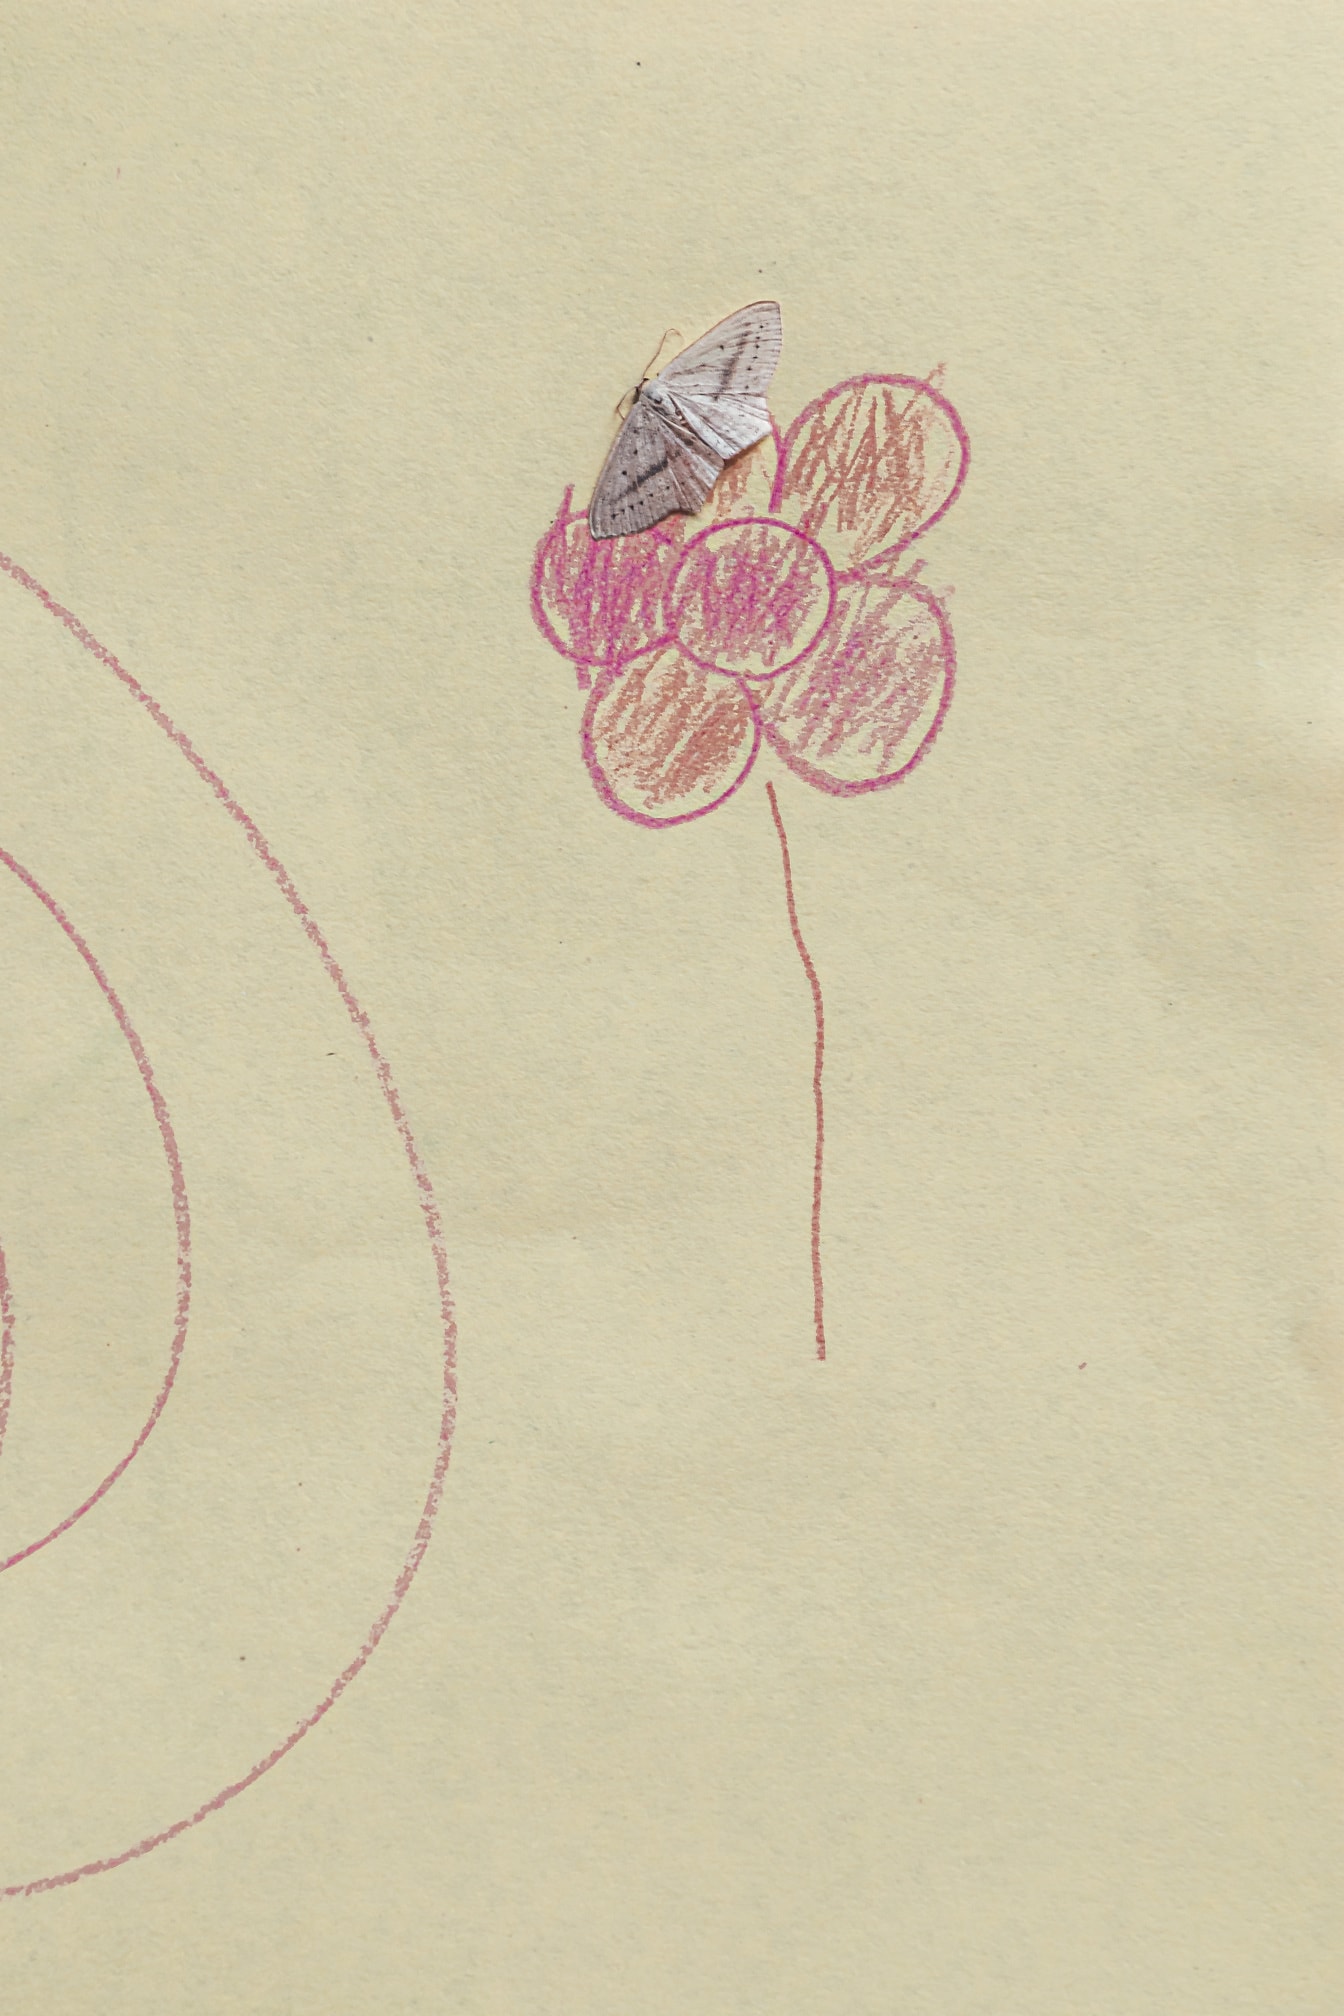 Kleiner weißer Schmetterling auf Papier mit Zeichnung einer rosafarbenen Blume